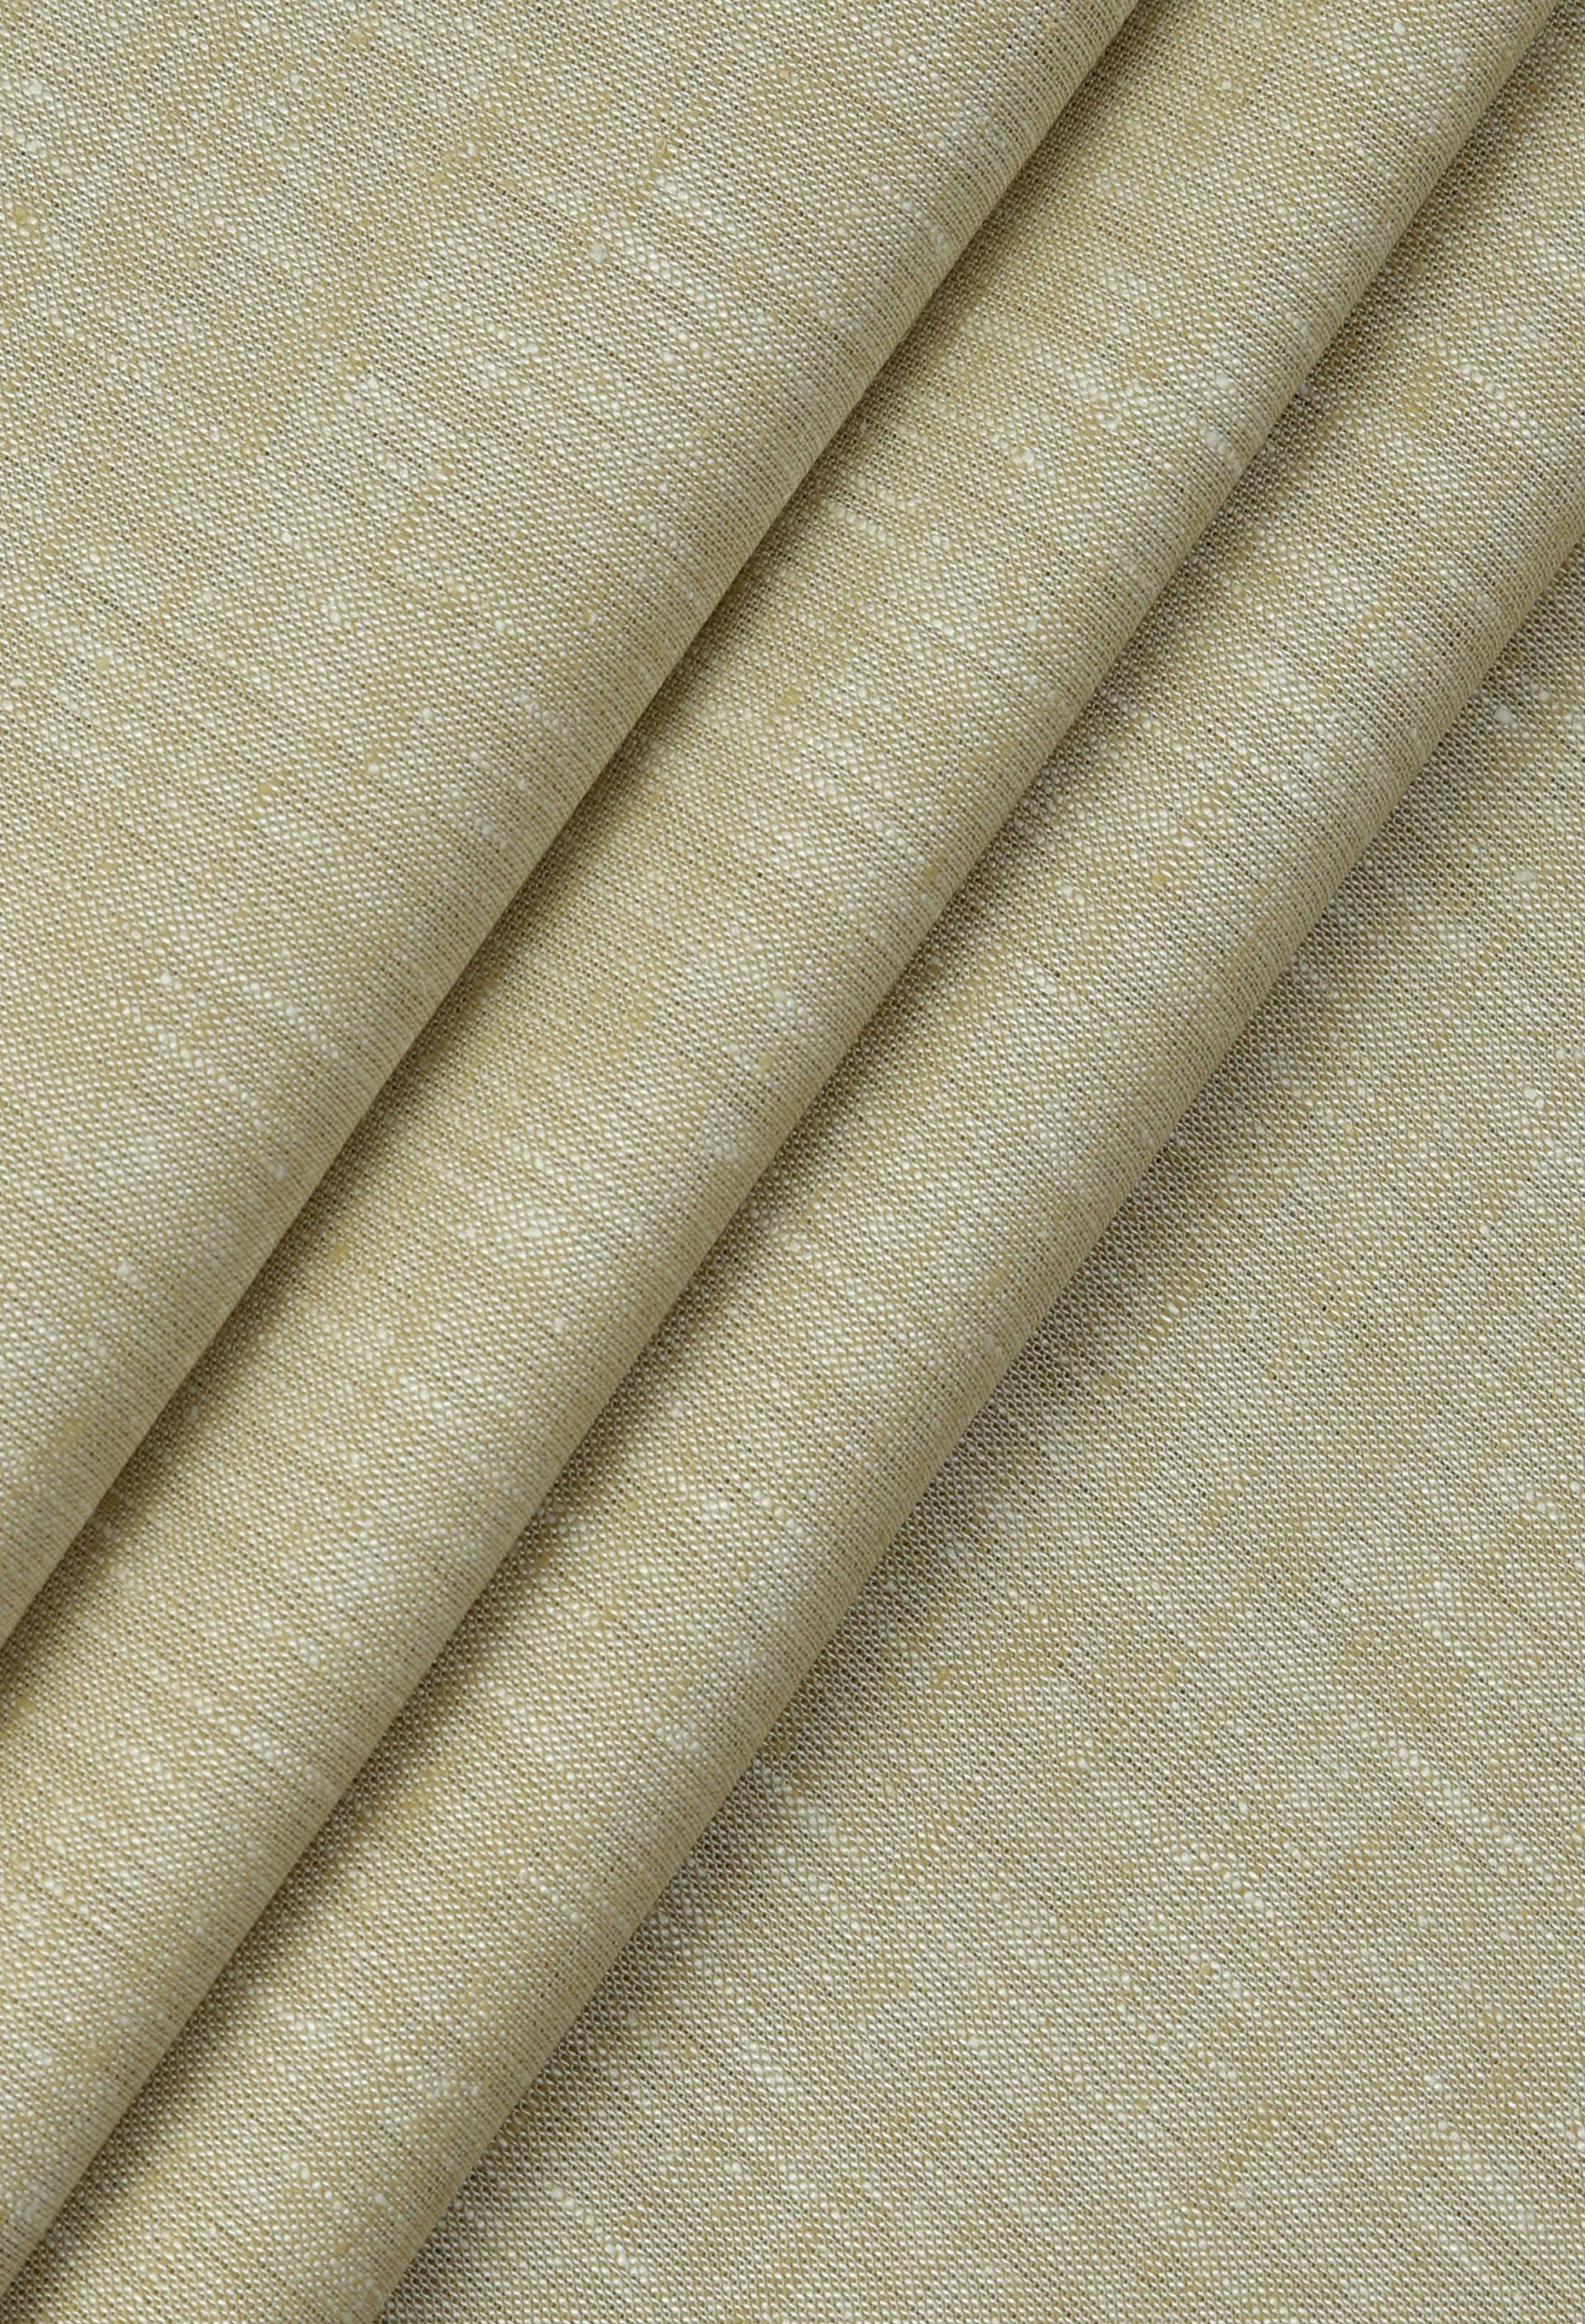 Sand Castle Brown Linen (TH-000673)